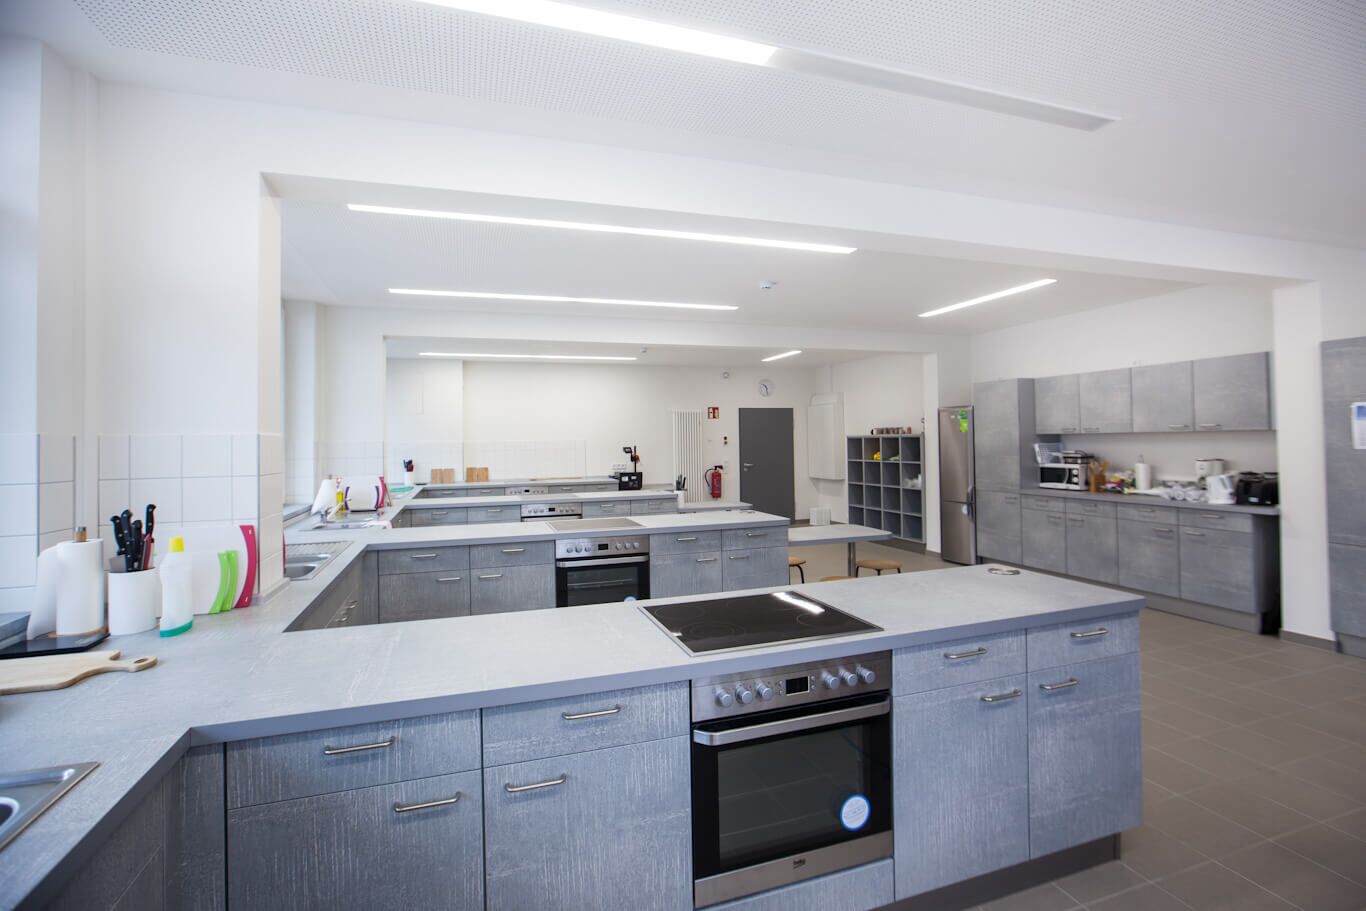 Blick in den neu gestalten Raum für den Hauswirtschaftsunterricht mit mehreren Küchenzeilen